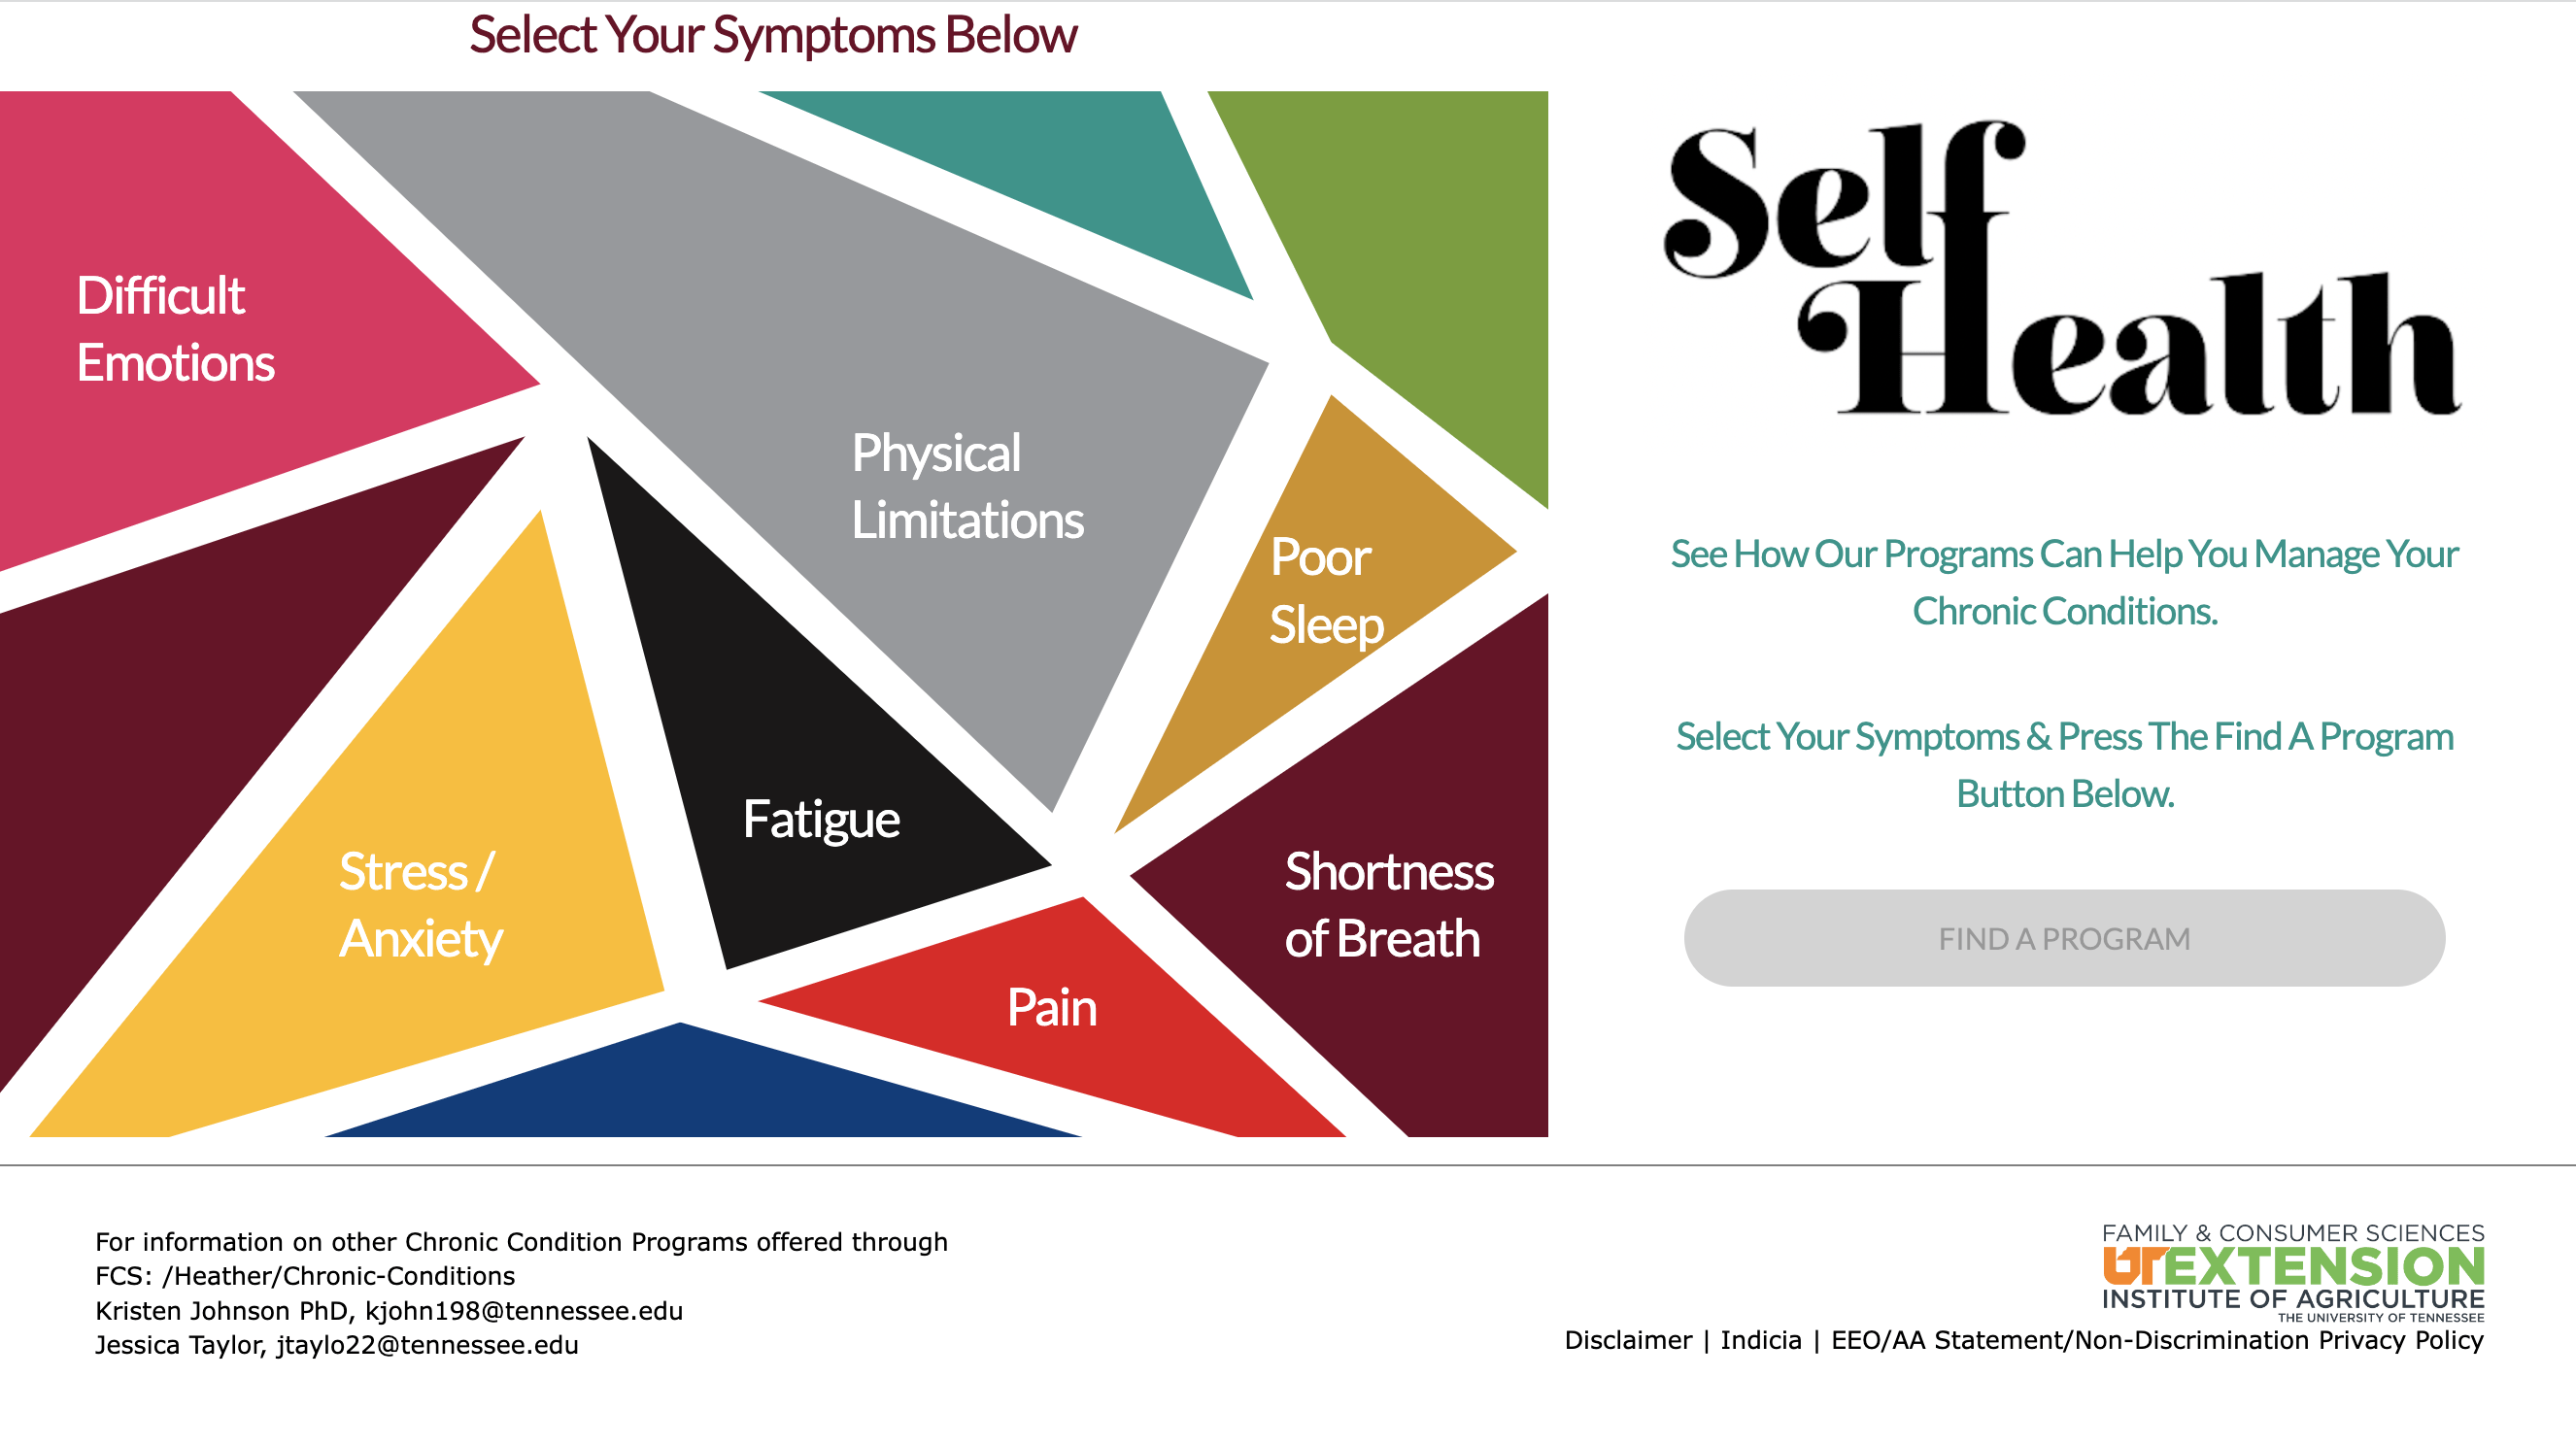 selfhealth.tennessee.edu